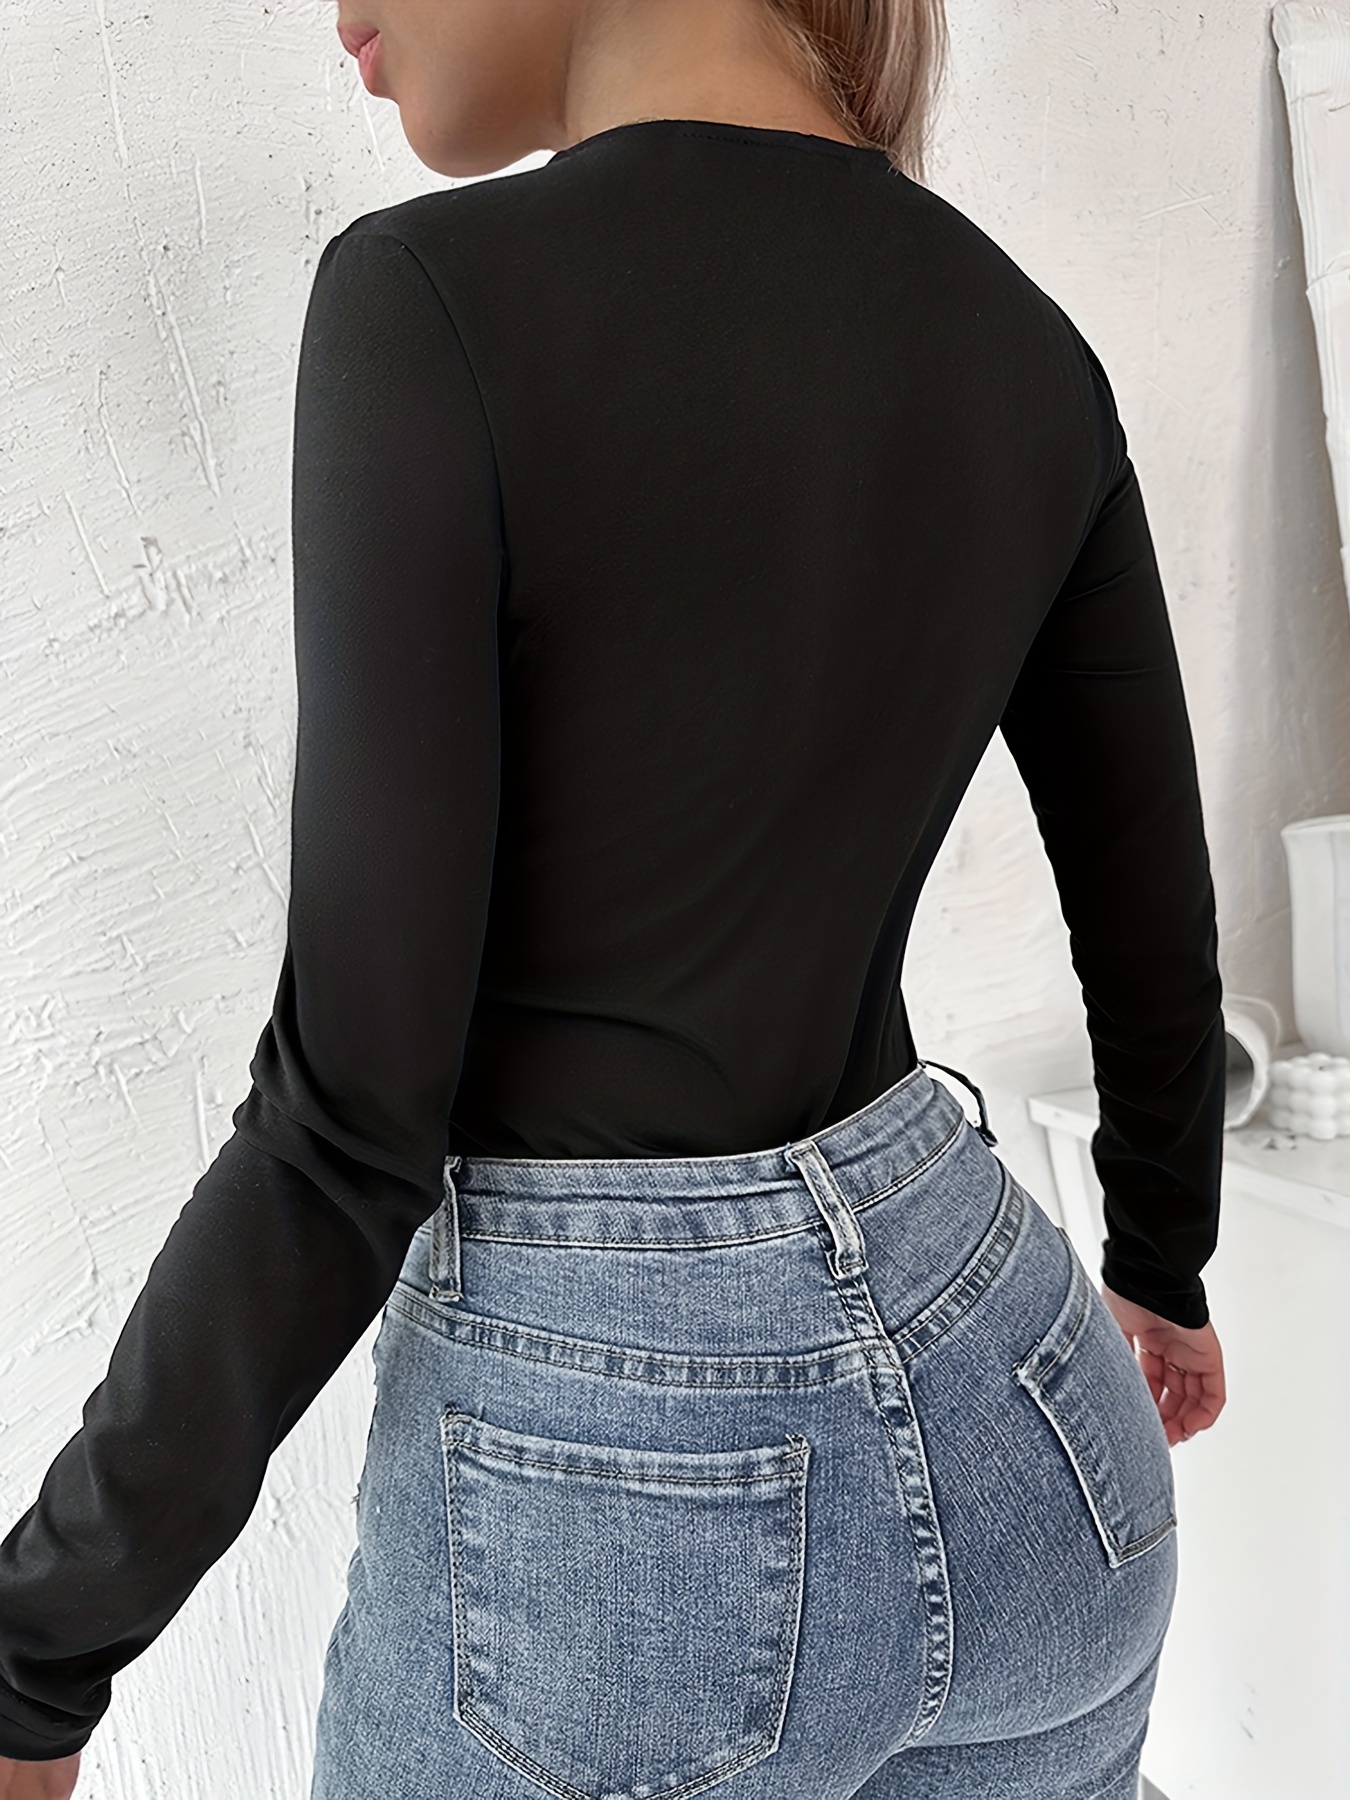 Black Lace Top Lace Bodysuit Long Sleeve Bodysuit Top Ladies Sexy